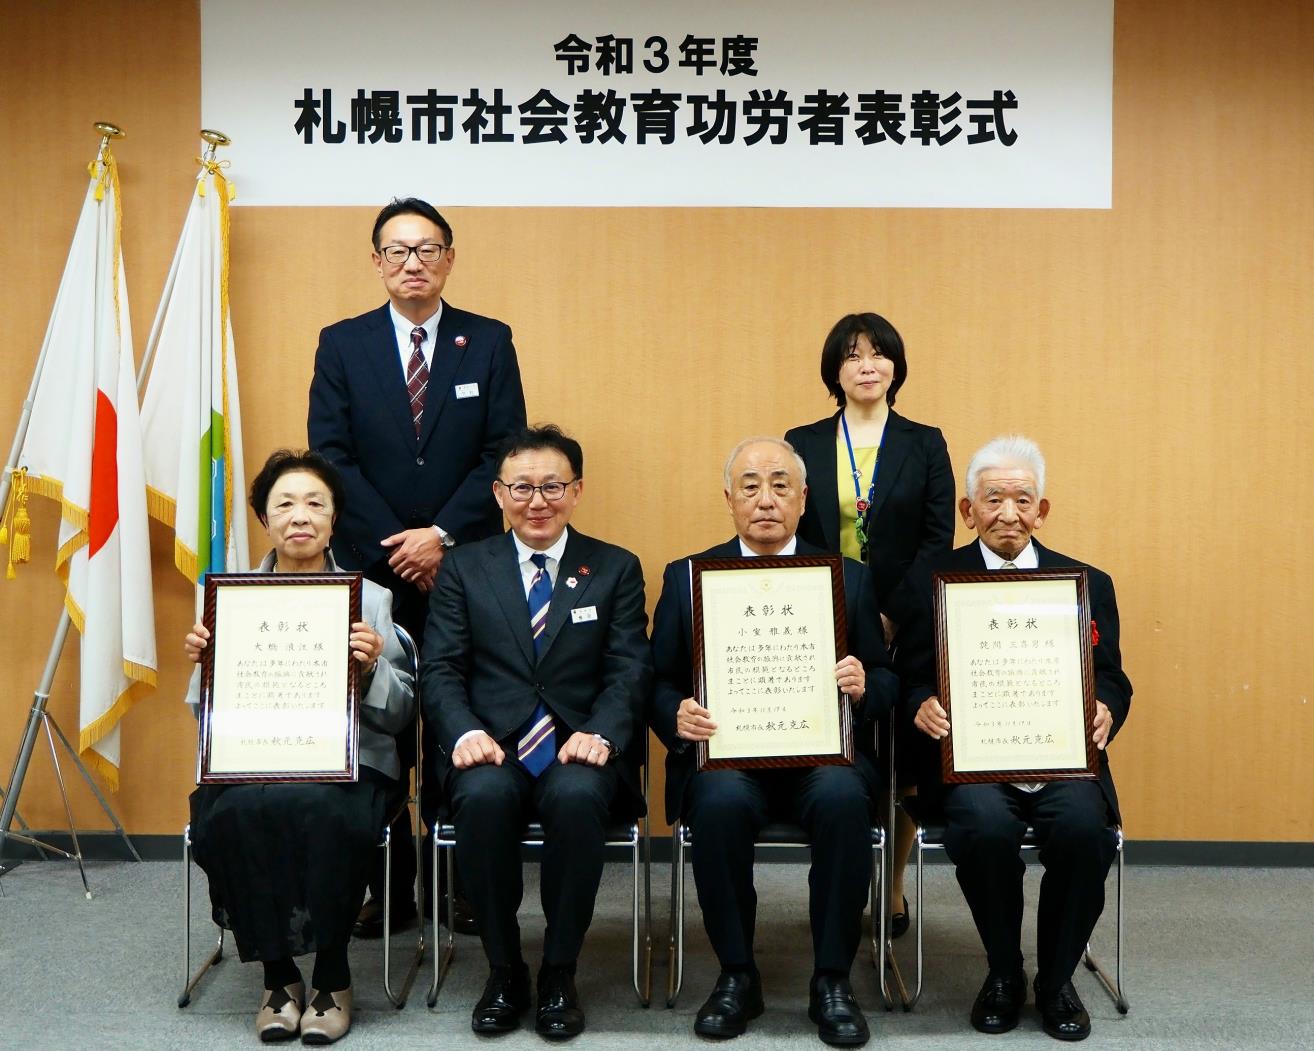 札幌市社会教育功労者表彰式